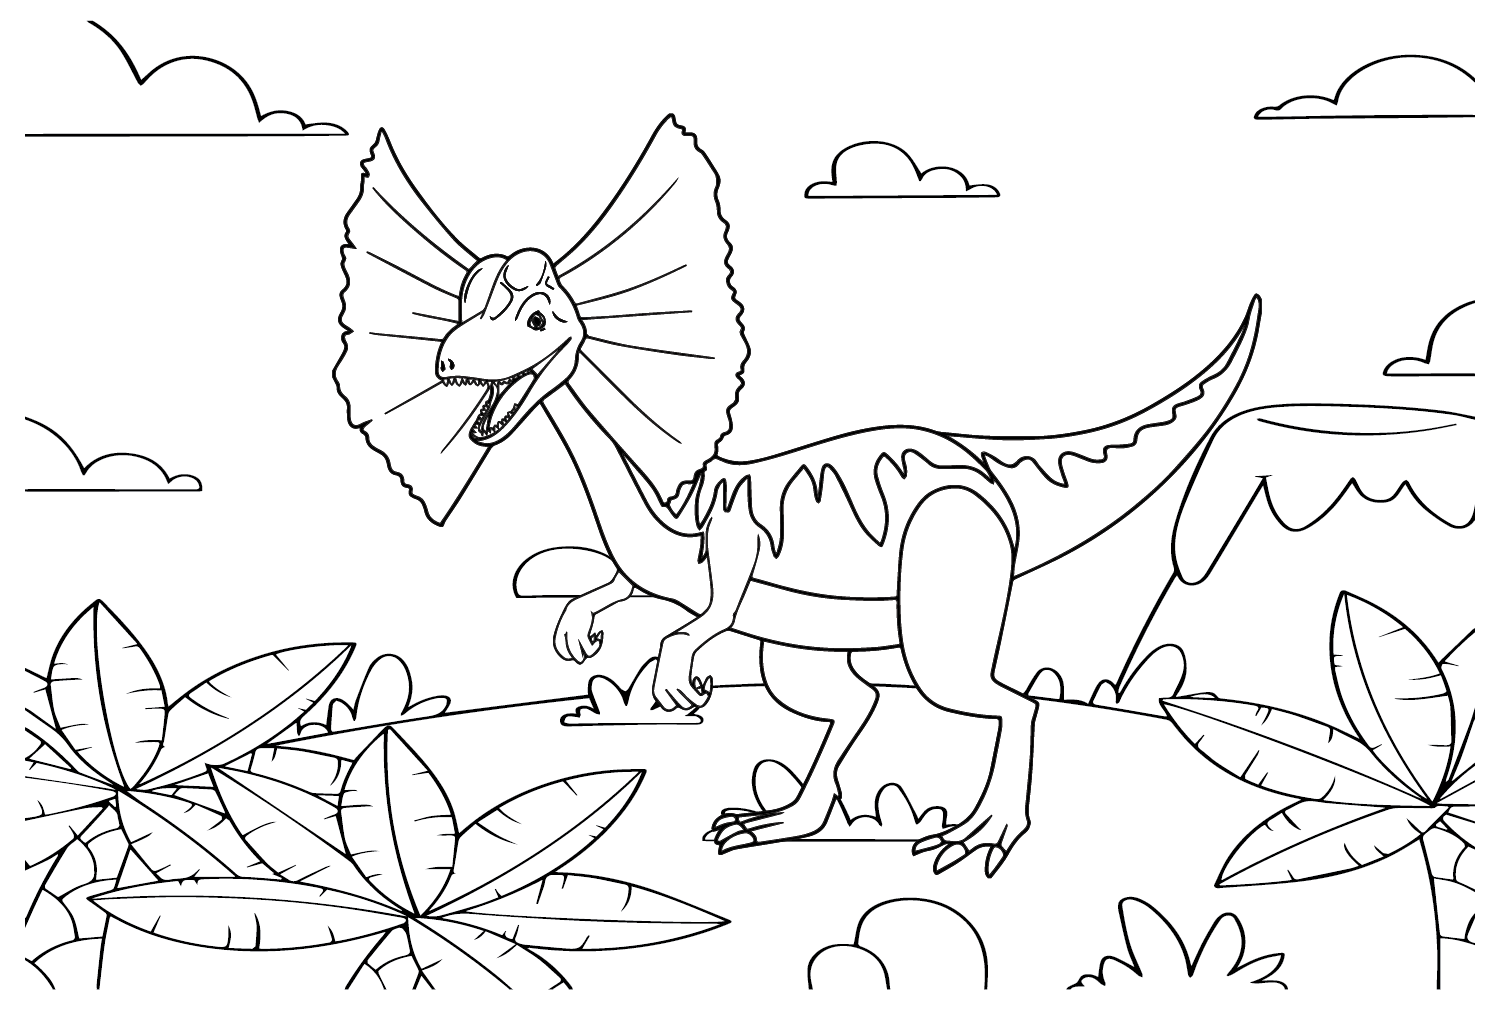 Dibujo de Dilophosaurus para colorear de Dilophosaurus